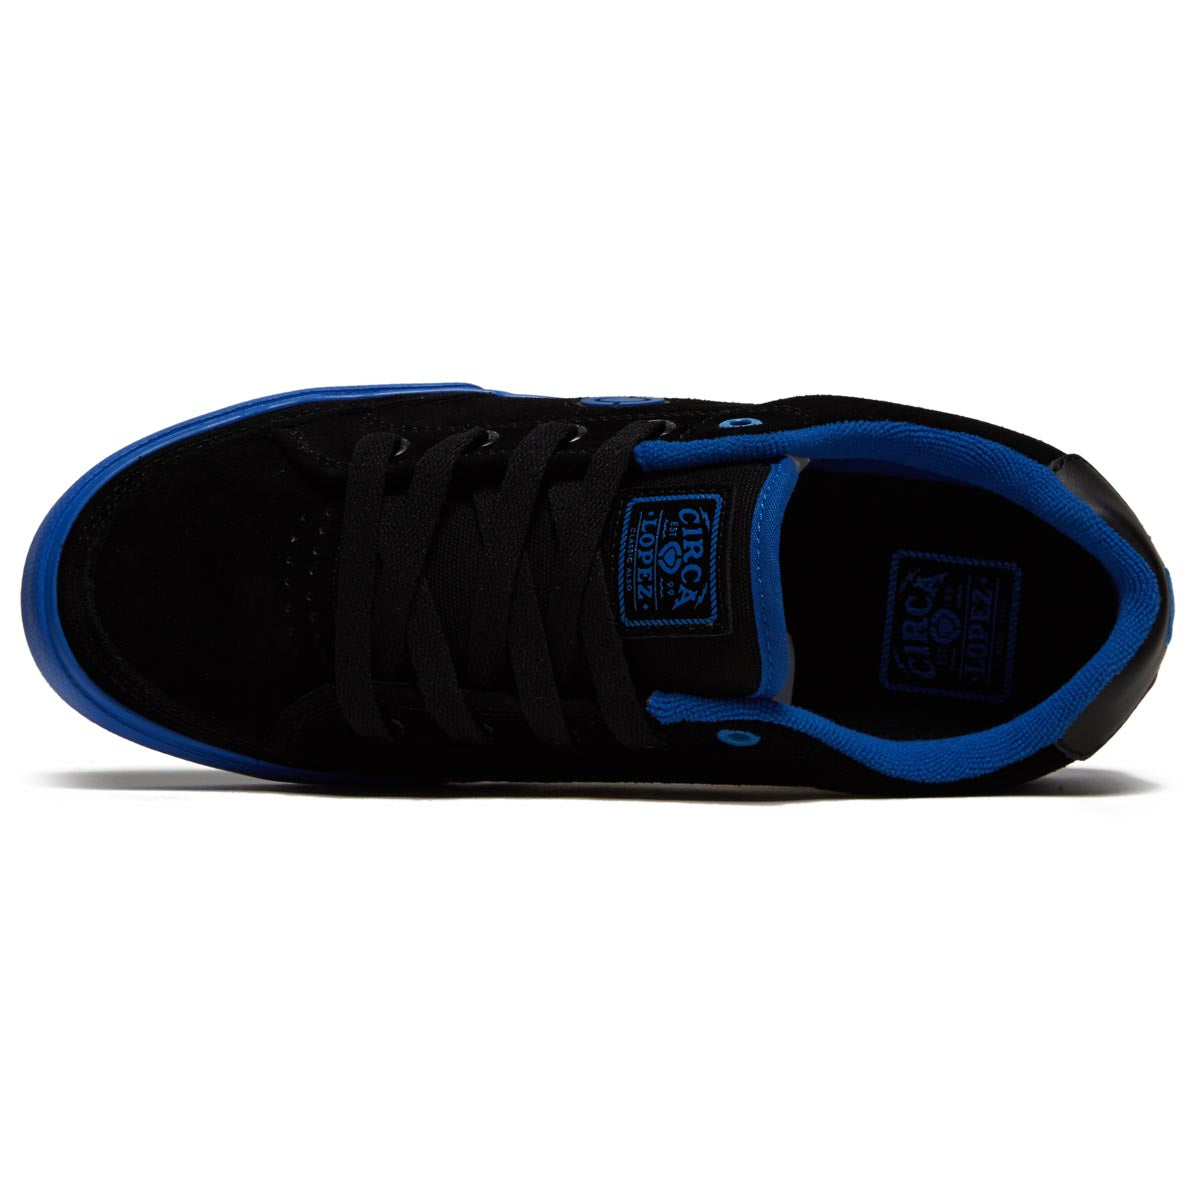 C1rca Al 50 Slim Shoes - Black/Strong Blue image 3